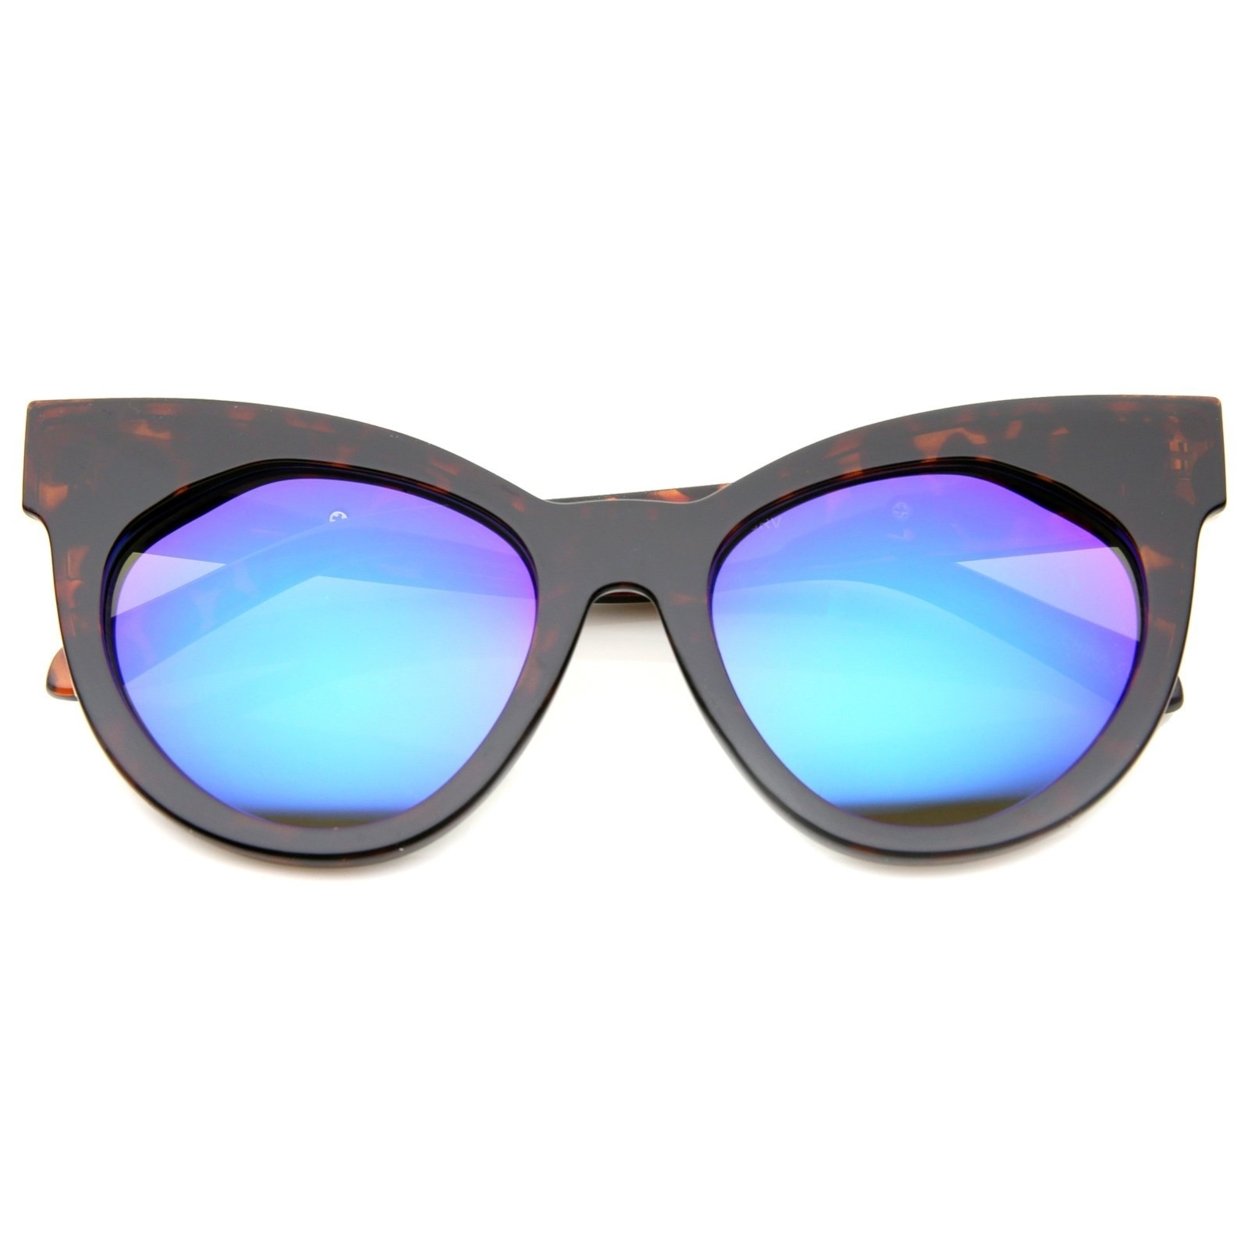 Women's Oversize Chunky Frame Iridescent Lens Cat Eye Sunglasses 55mm - Black / Orange Mirror